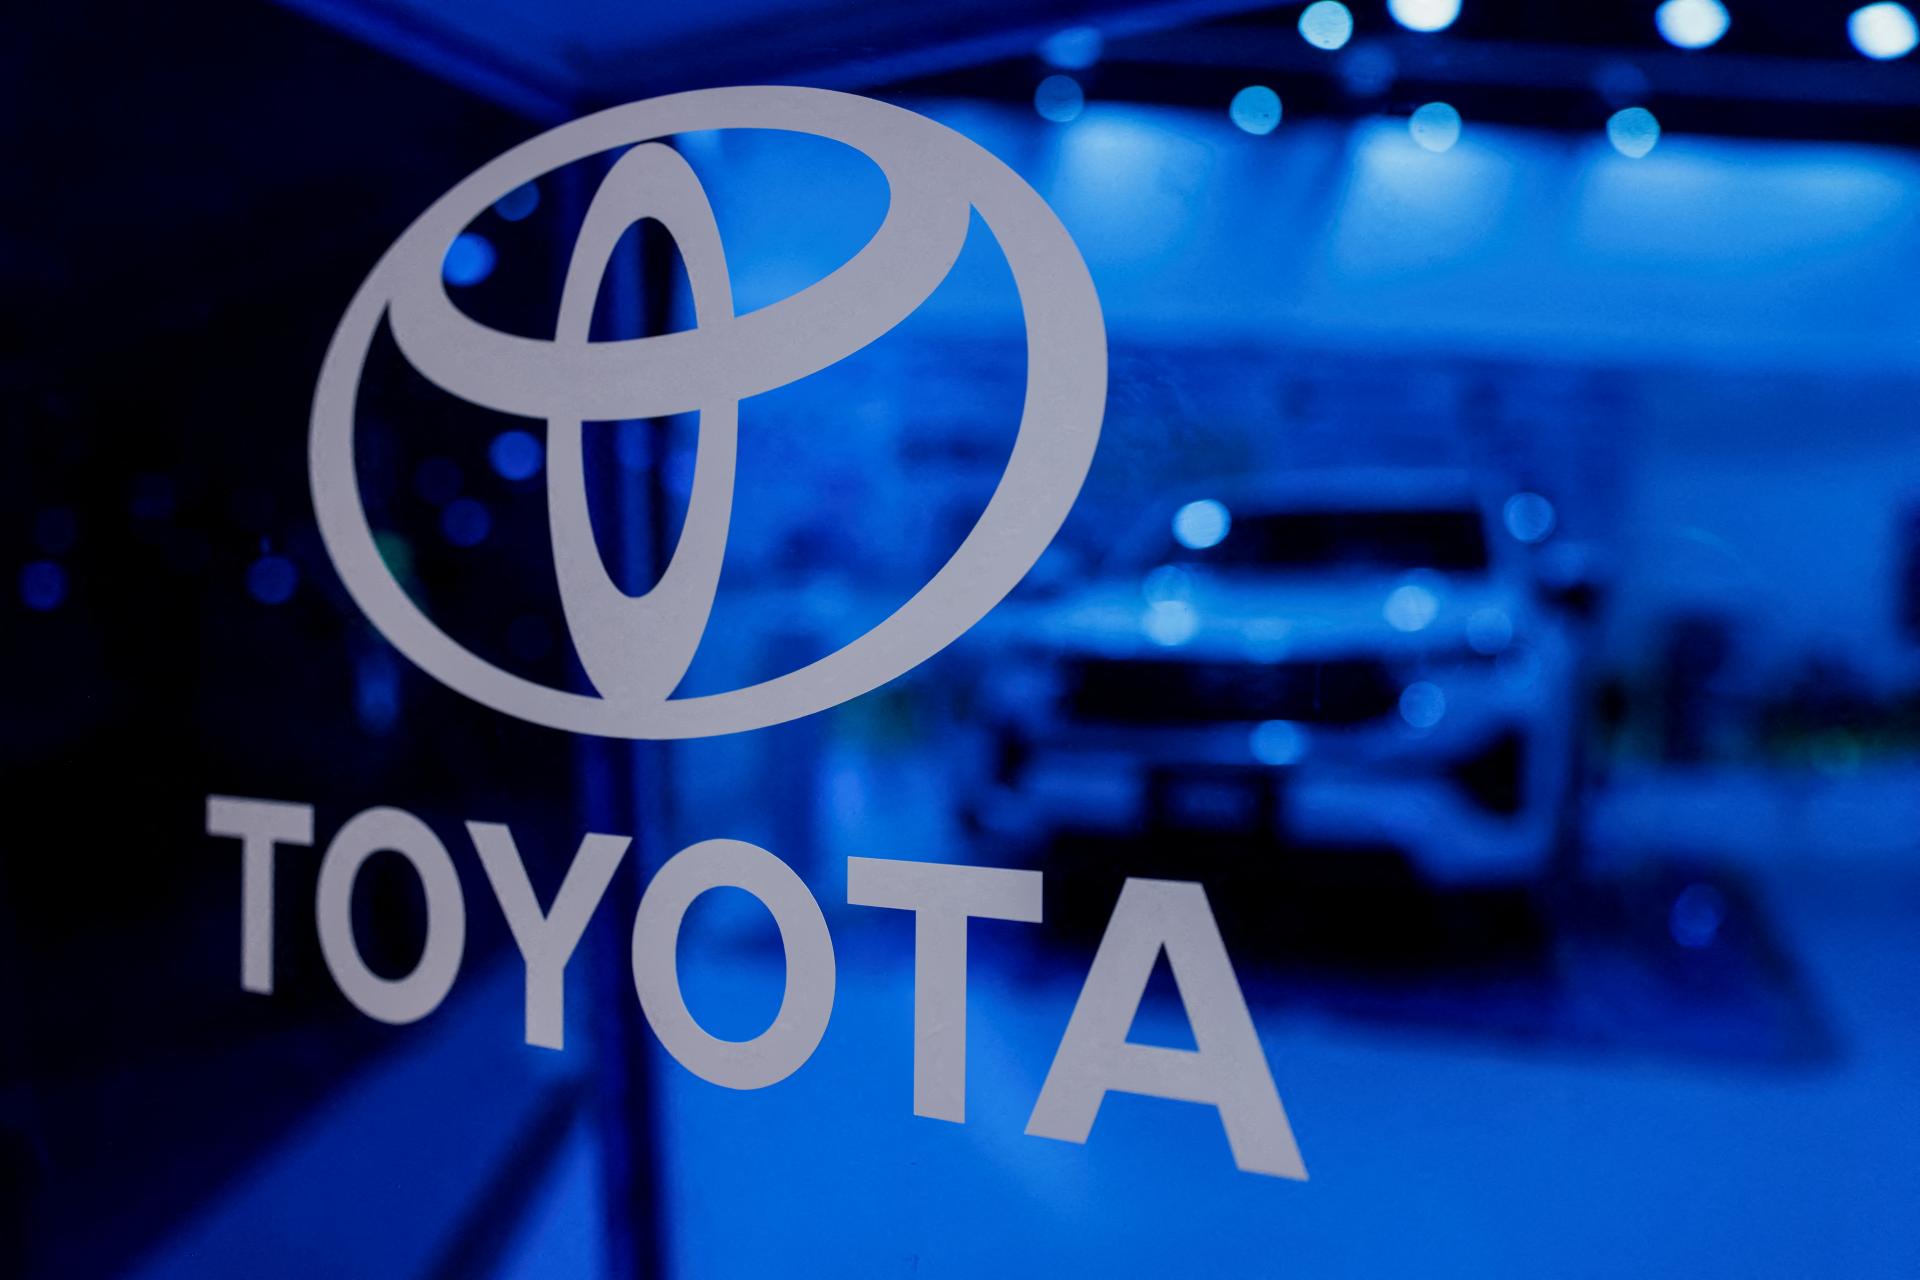 Výroba aj predaj áut Toyoty klesli. Výsledky ovplyvnila cenová vojna v Číne a problémy na domácom trhu